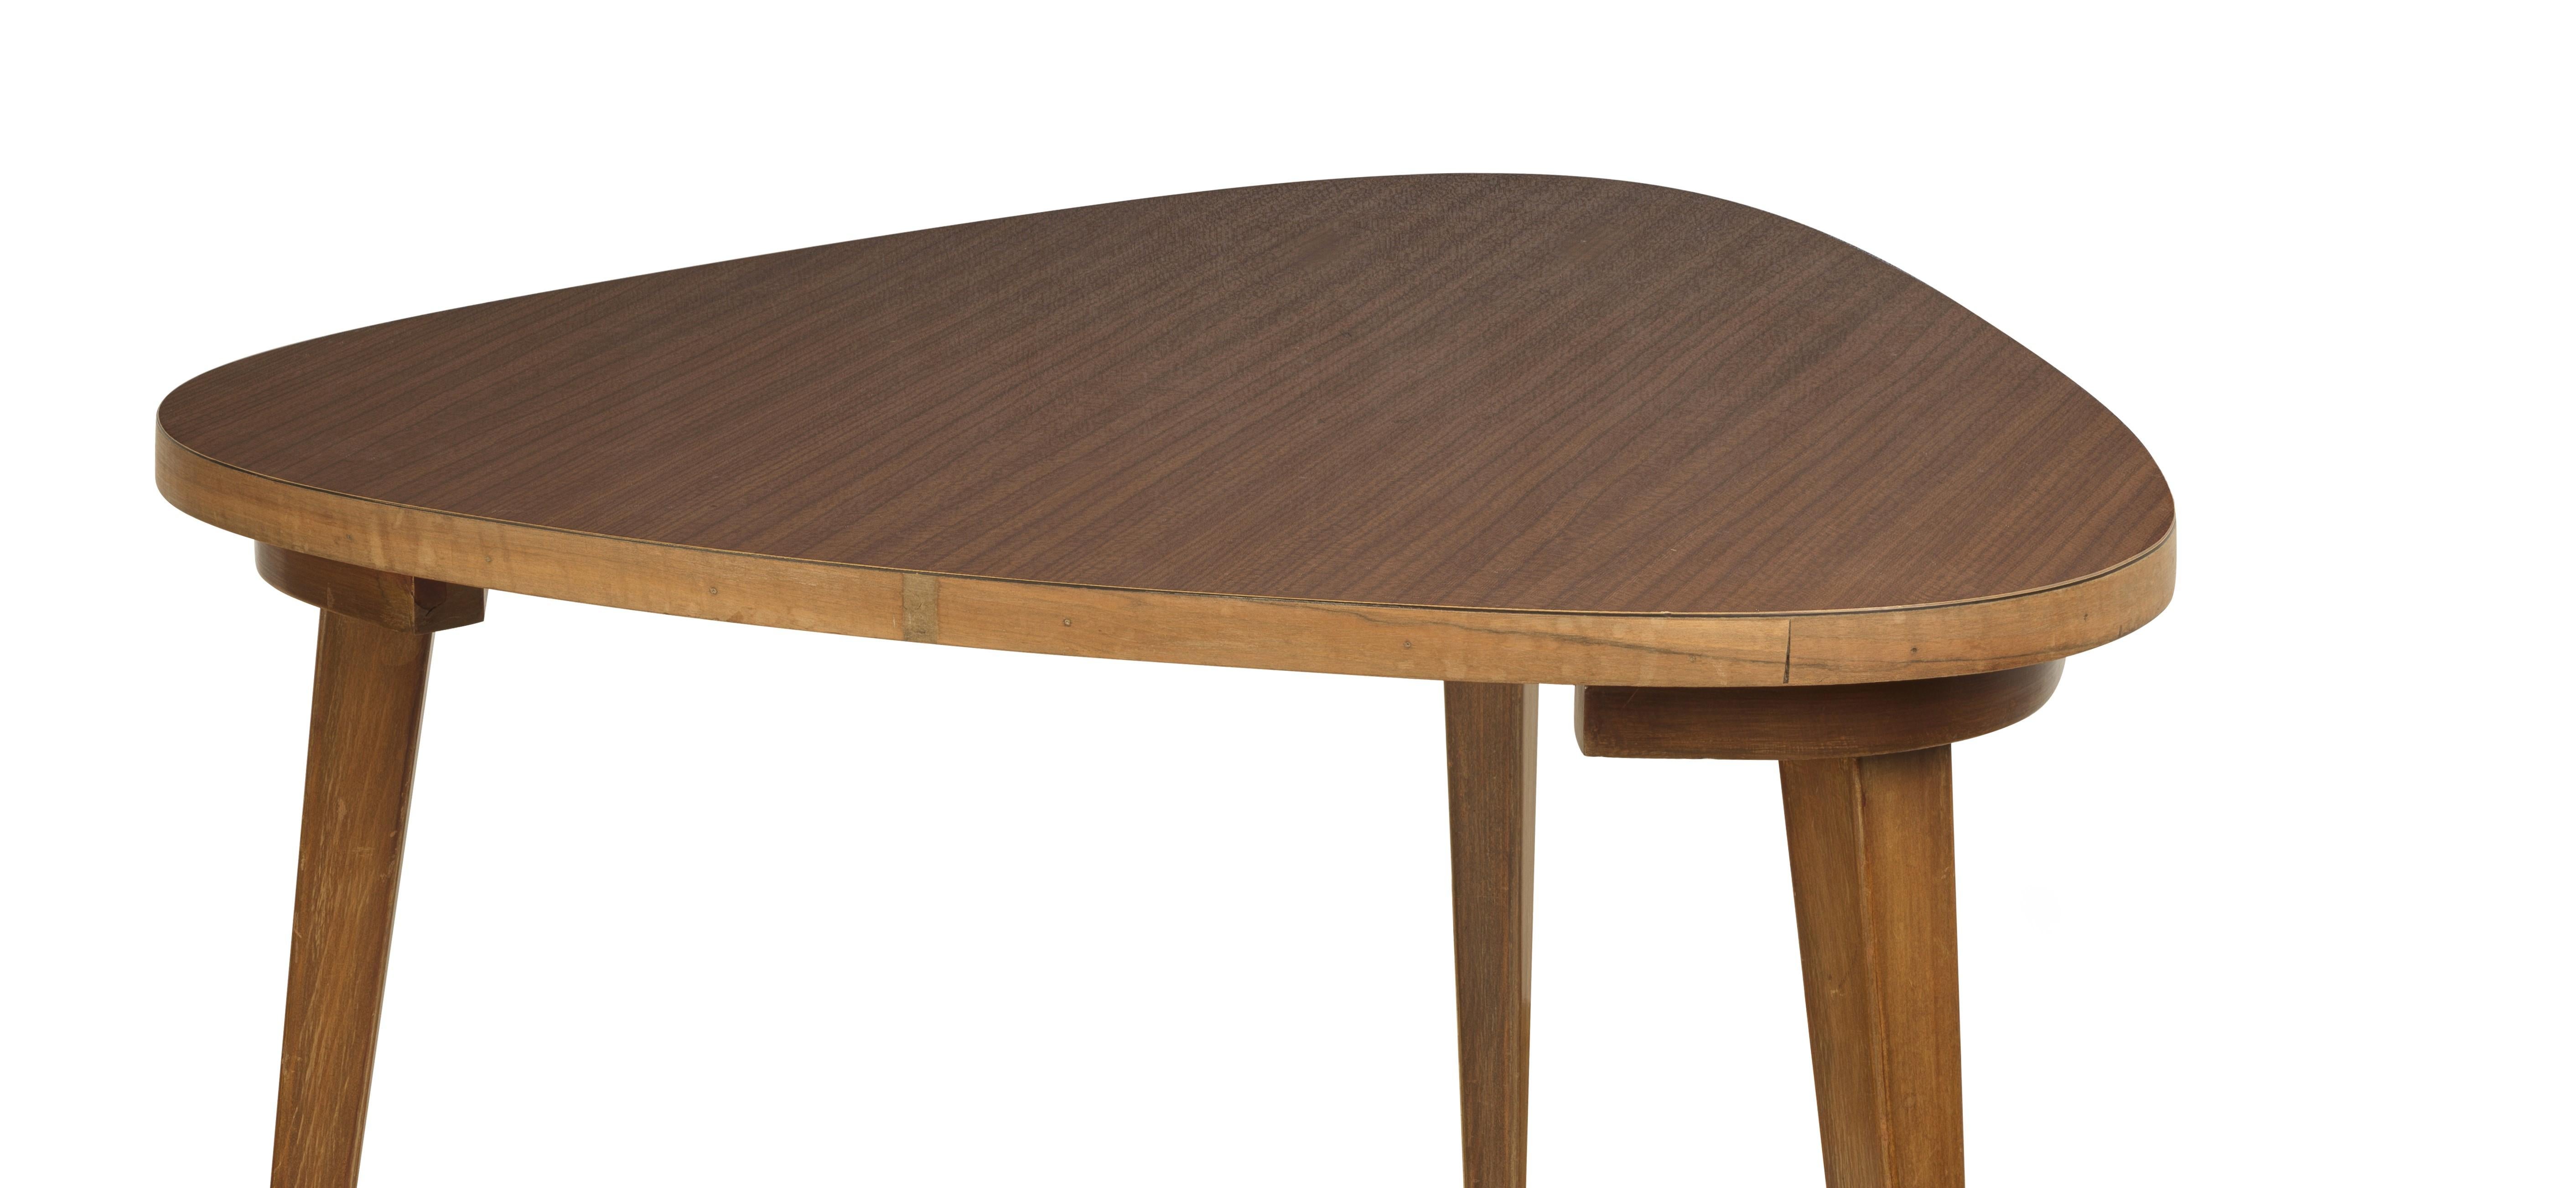  associent le design des meubles danois à l'âge d'or du pays, le milieu du XXe siècle. Cette table d'appoint simple, mais magnifiquement conçue et réalisée, montre pourquoi il en est ainsi. Cette table moderne du milieu du siècle allie l'esthétique